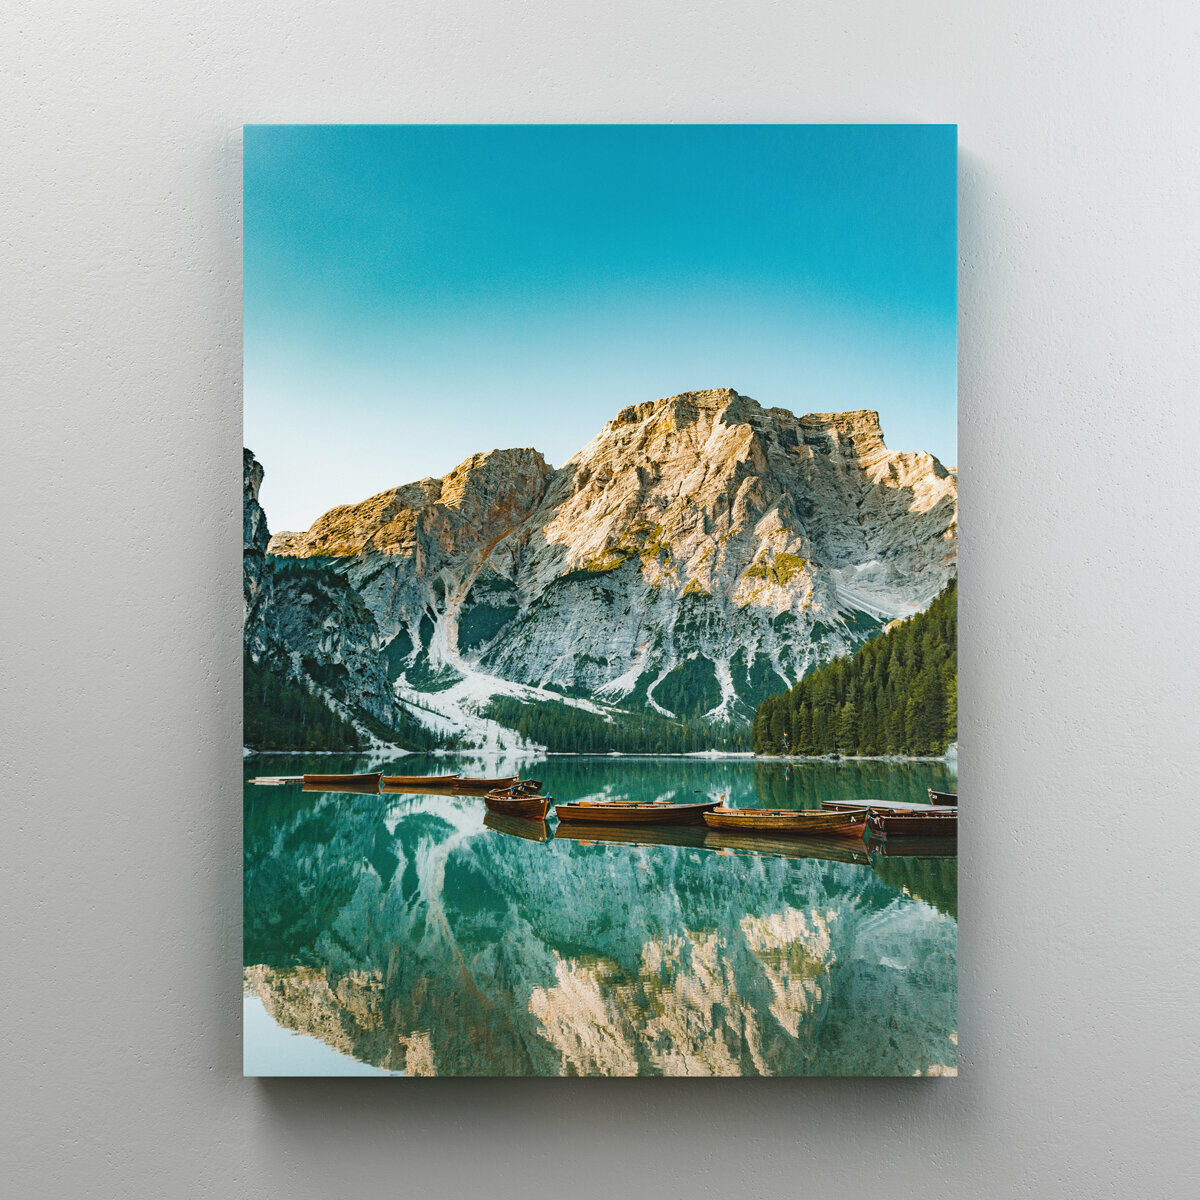 Интерьерная картина на холсте "Снежная гора" природа, размер 22x30 см